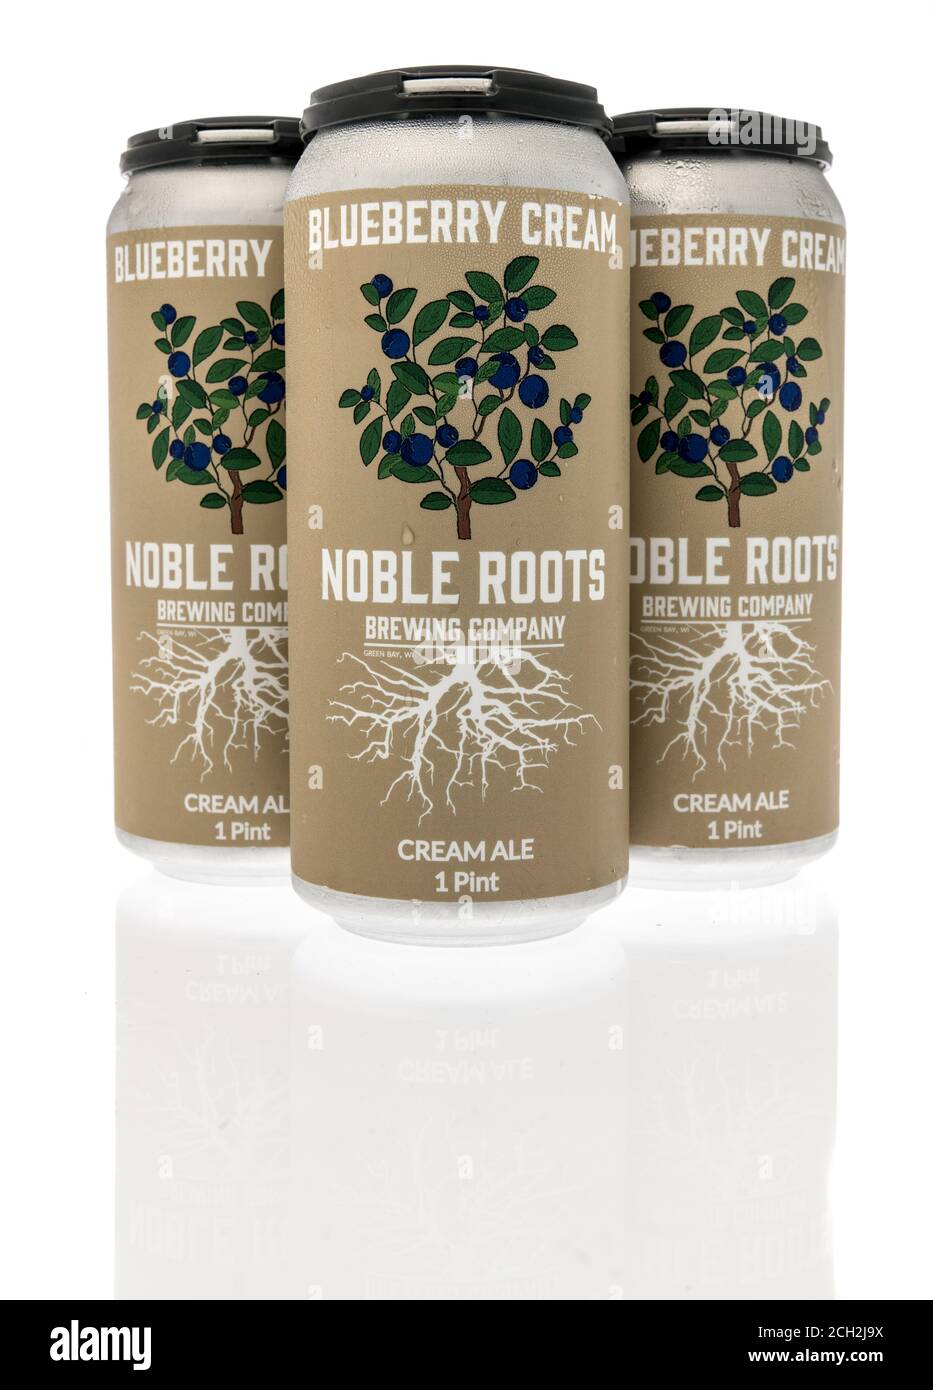 Winneconne , WI - 12 septembre 2020 : un paquet de quatre bières à la crème Blueberry de Noble Roots bravant sur un fond isolé. Banque D'Images